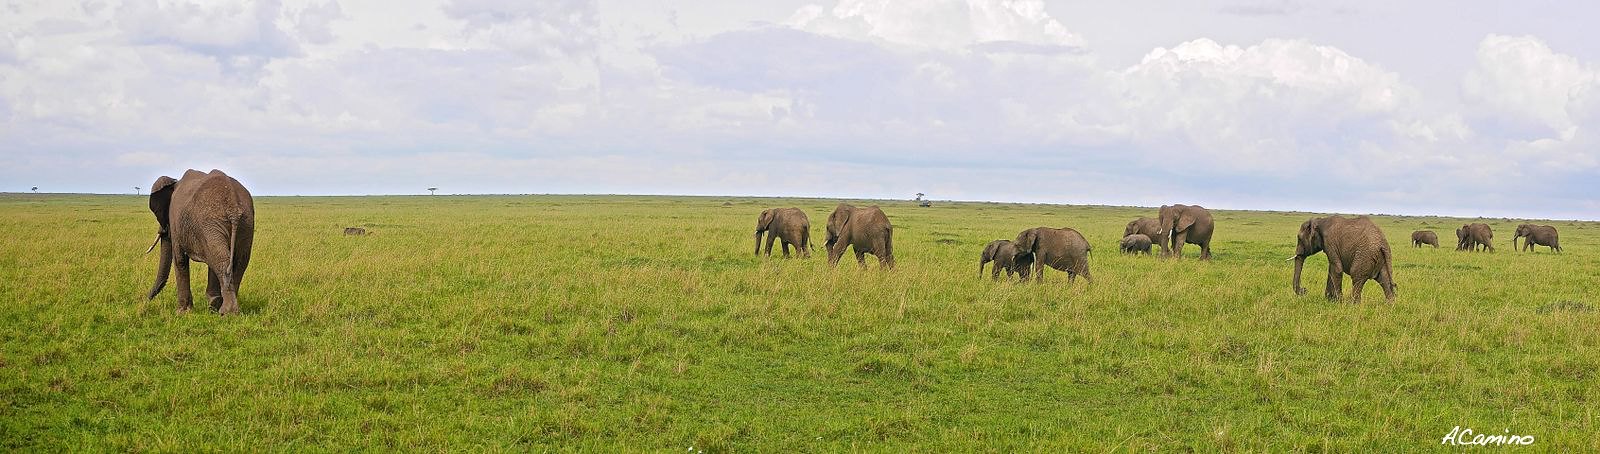 12 días de Safari en Kenia: Jambo bwana - Blogs de Kenia - El parto de una gacela en un Masai Mara, lleno de búfalos, leones, guepardos... (53)